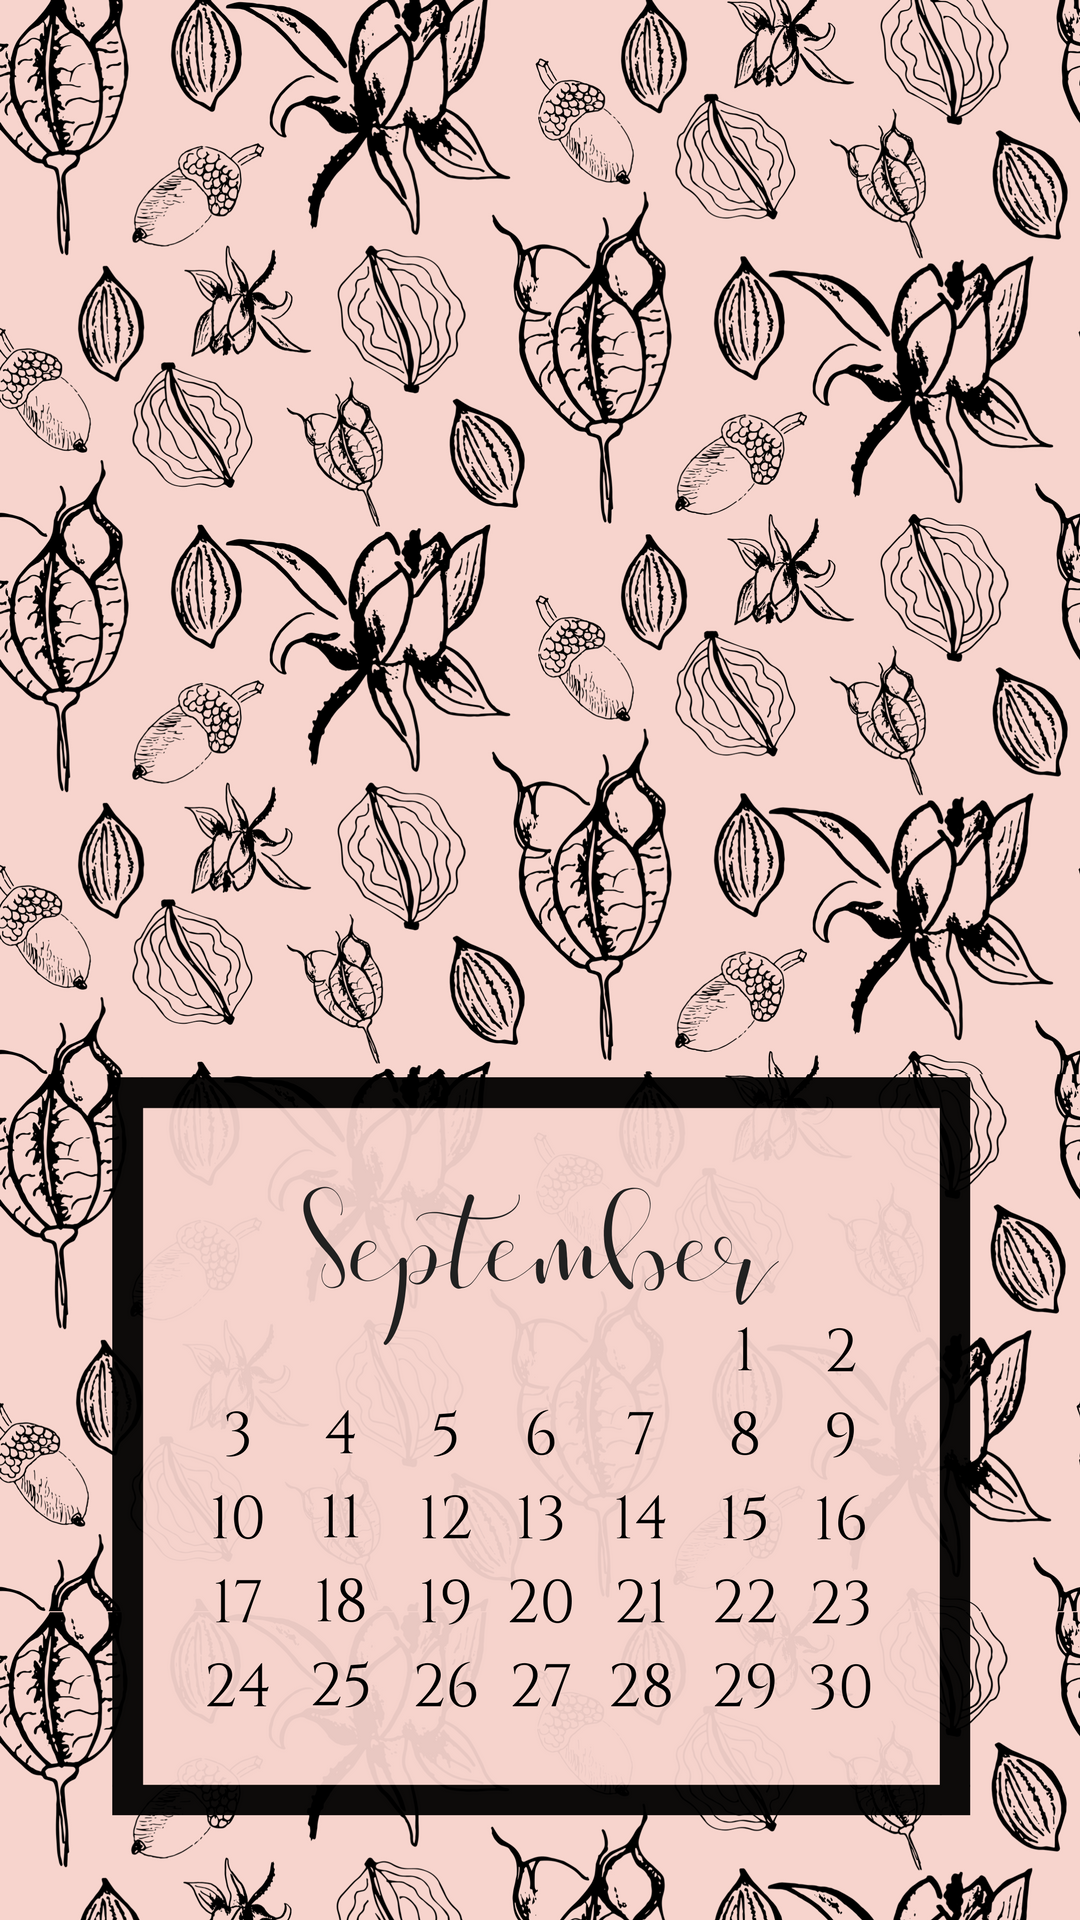 September 2017 Smart Phone Wallpaper - September 2018 Phone Background - HD Wallpaper 